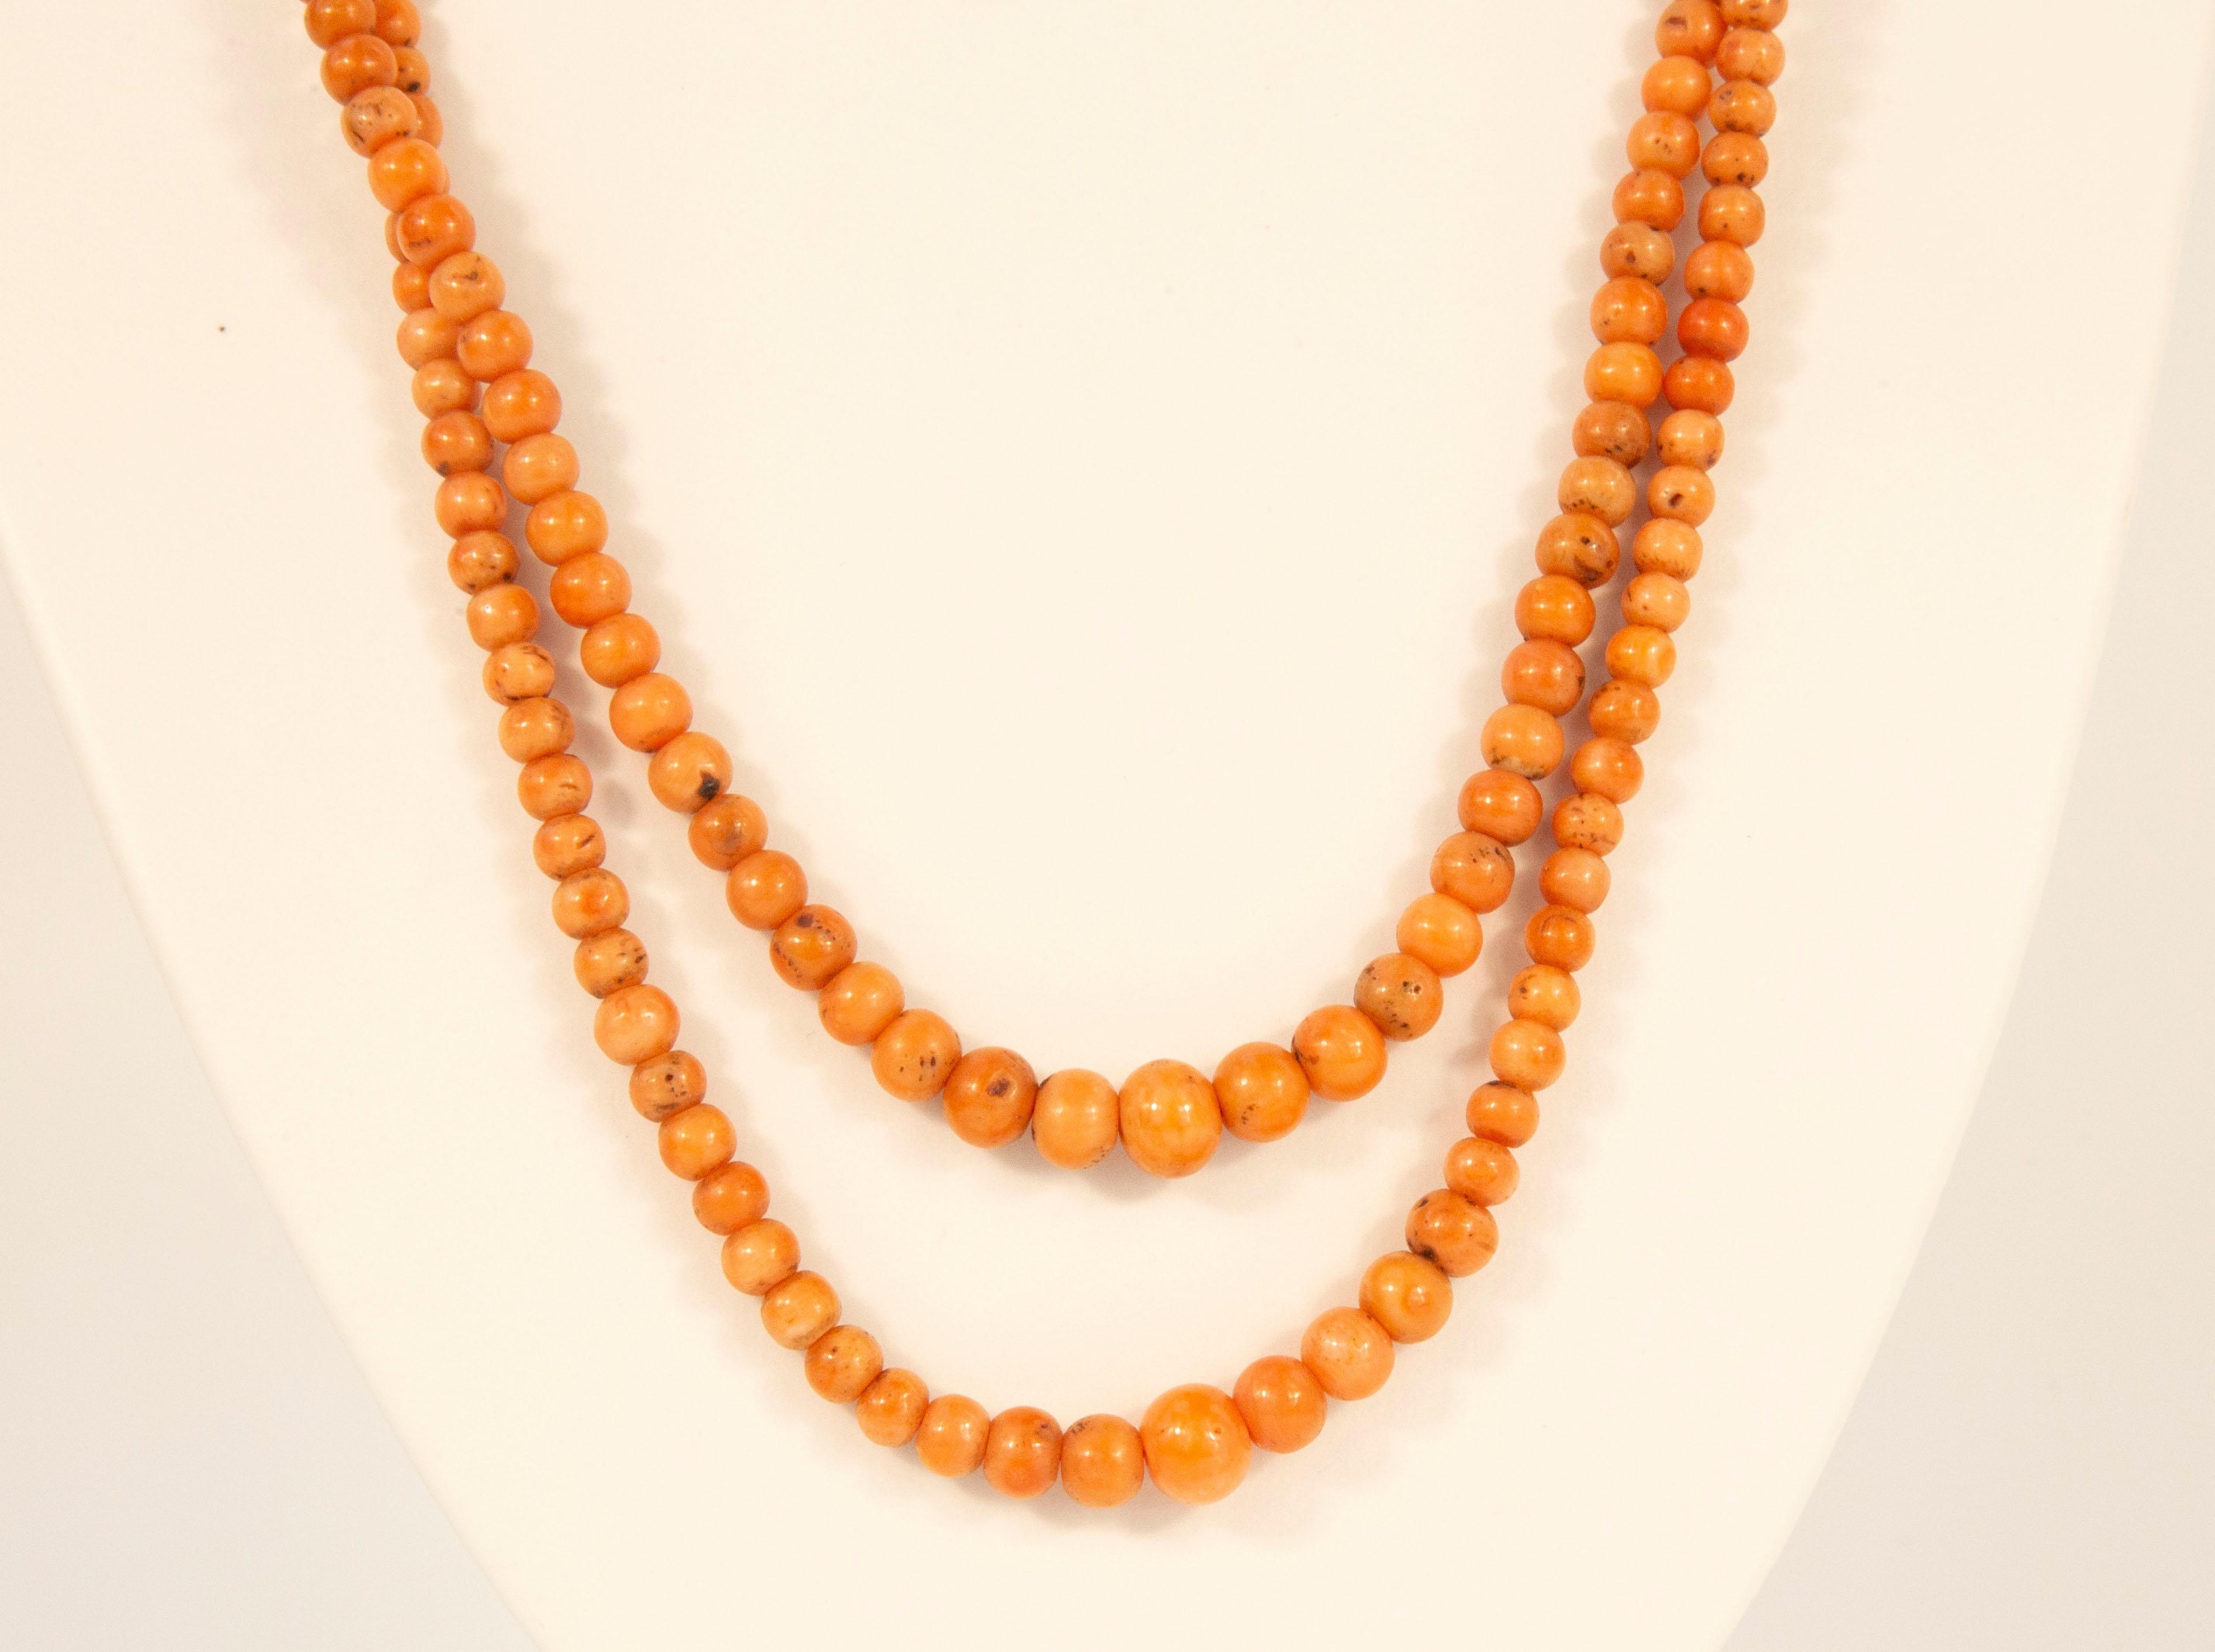 Antike 2-reihige Halskette aus echter roter Koralle (Corallium Rubrum*) mit abgestuften Perlen und filigranem Verschluss aus 14 Karat Gelbgold. Die Halskette wurde Anfang 1900 in den Niederlanden hergestellt. Die Halskette hat eine mittlere Länge